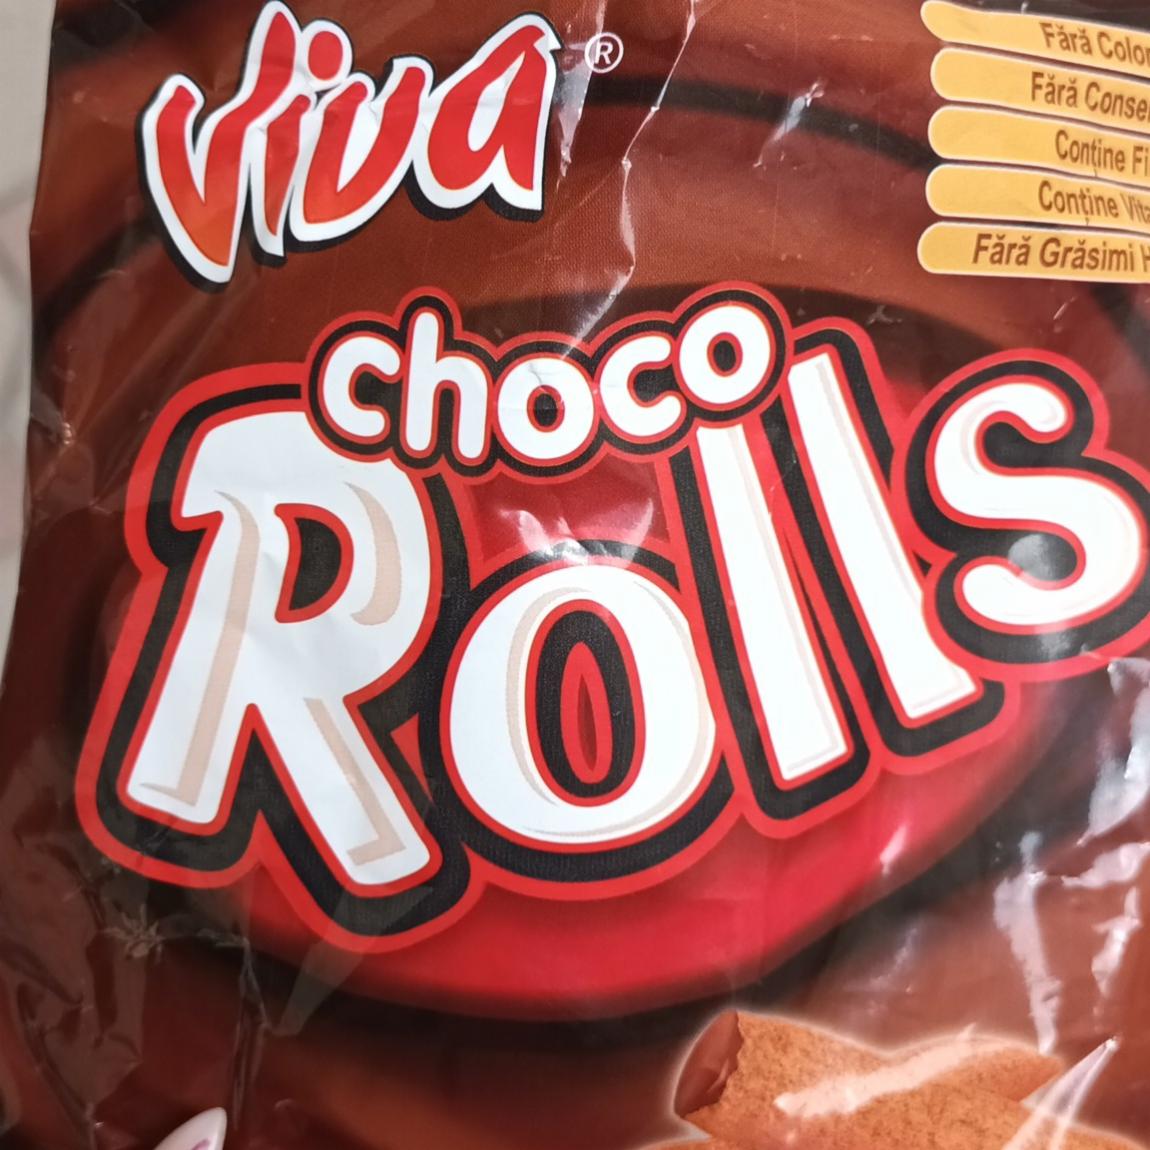 Képek - Choco Rolls kakaós-csokoládés krémmel töltött extrudált gabonarudacska Viva